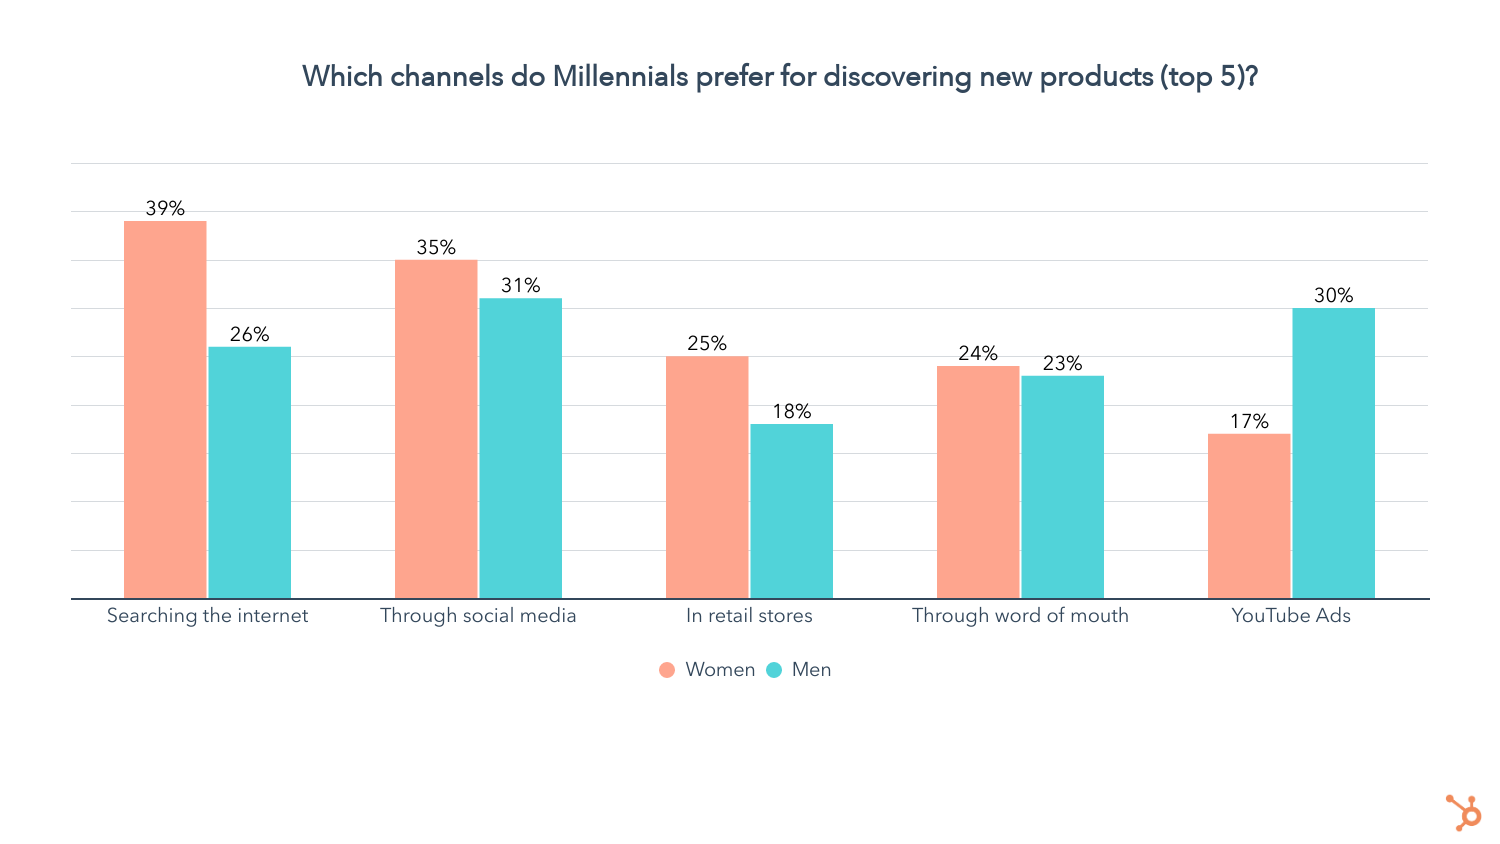 23% Millennials nói rằng YouTube là kênh ưa thích của họ để tìm kiếm các sản phẩm mới